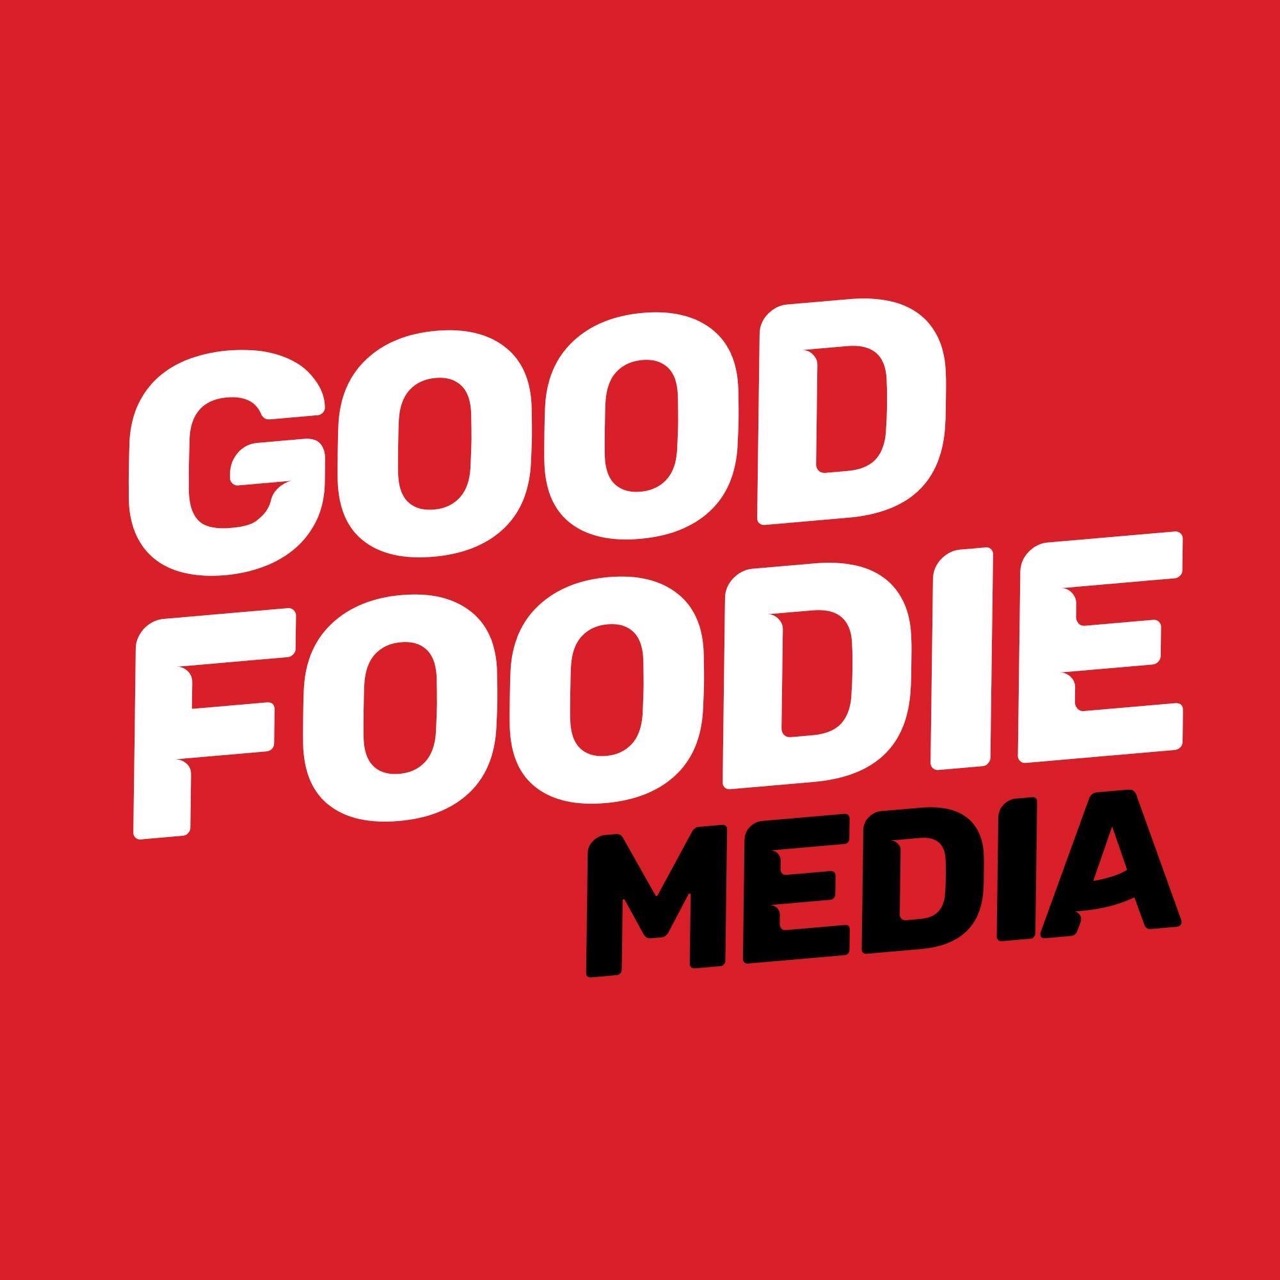 Good Foodie Media